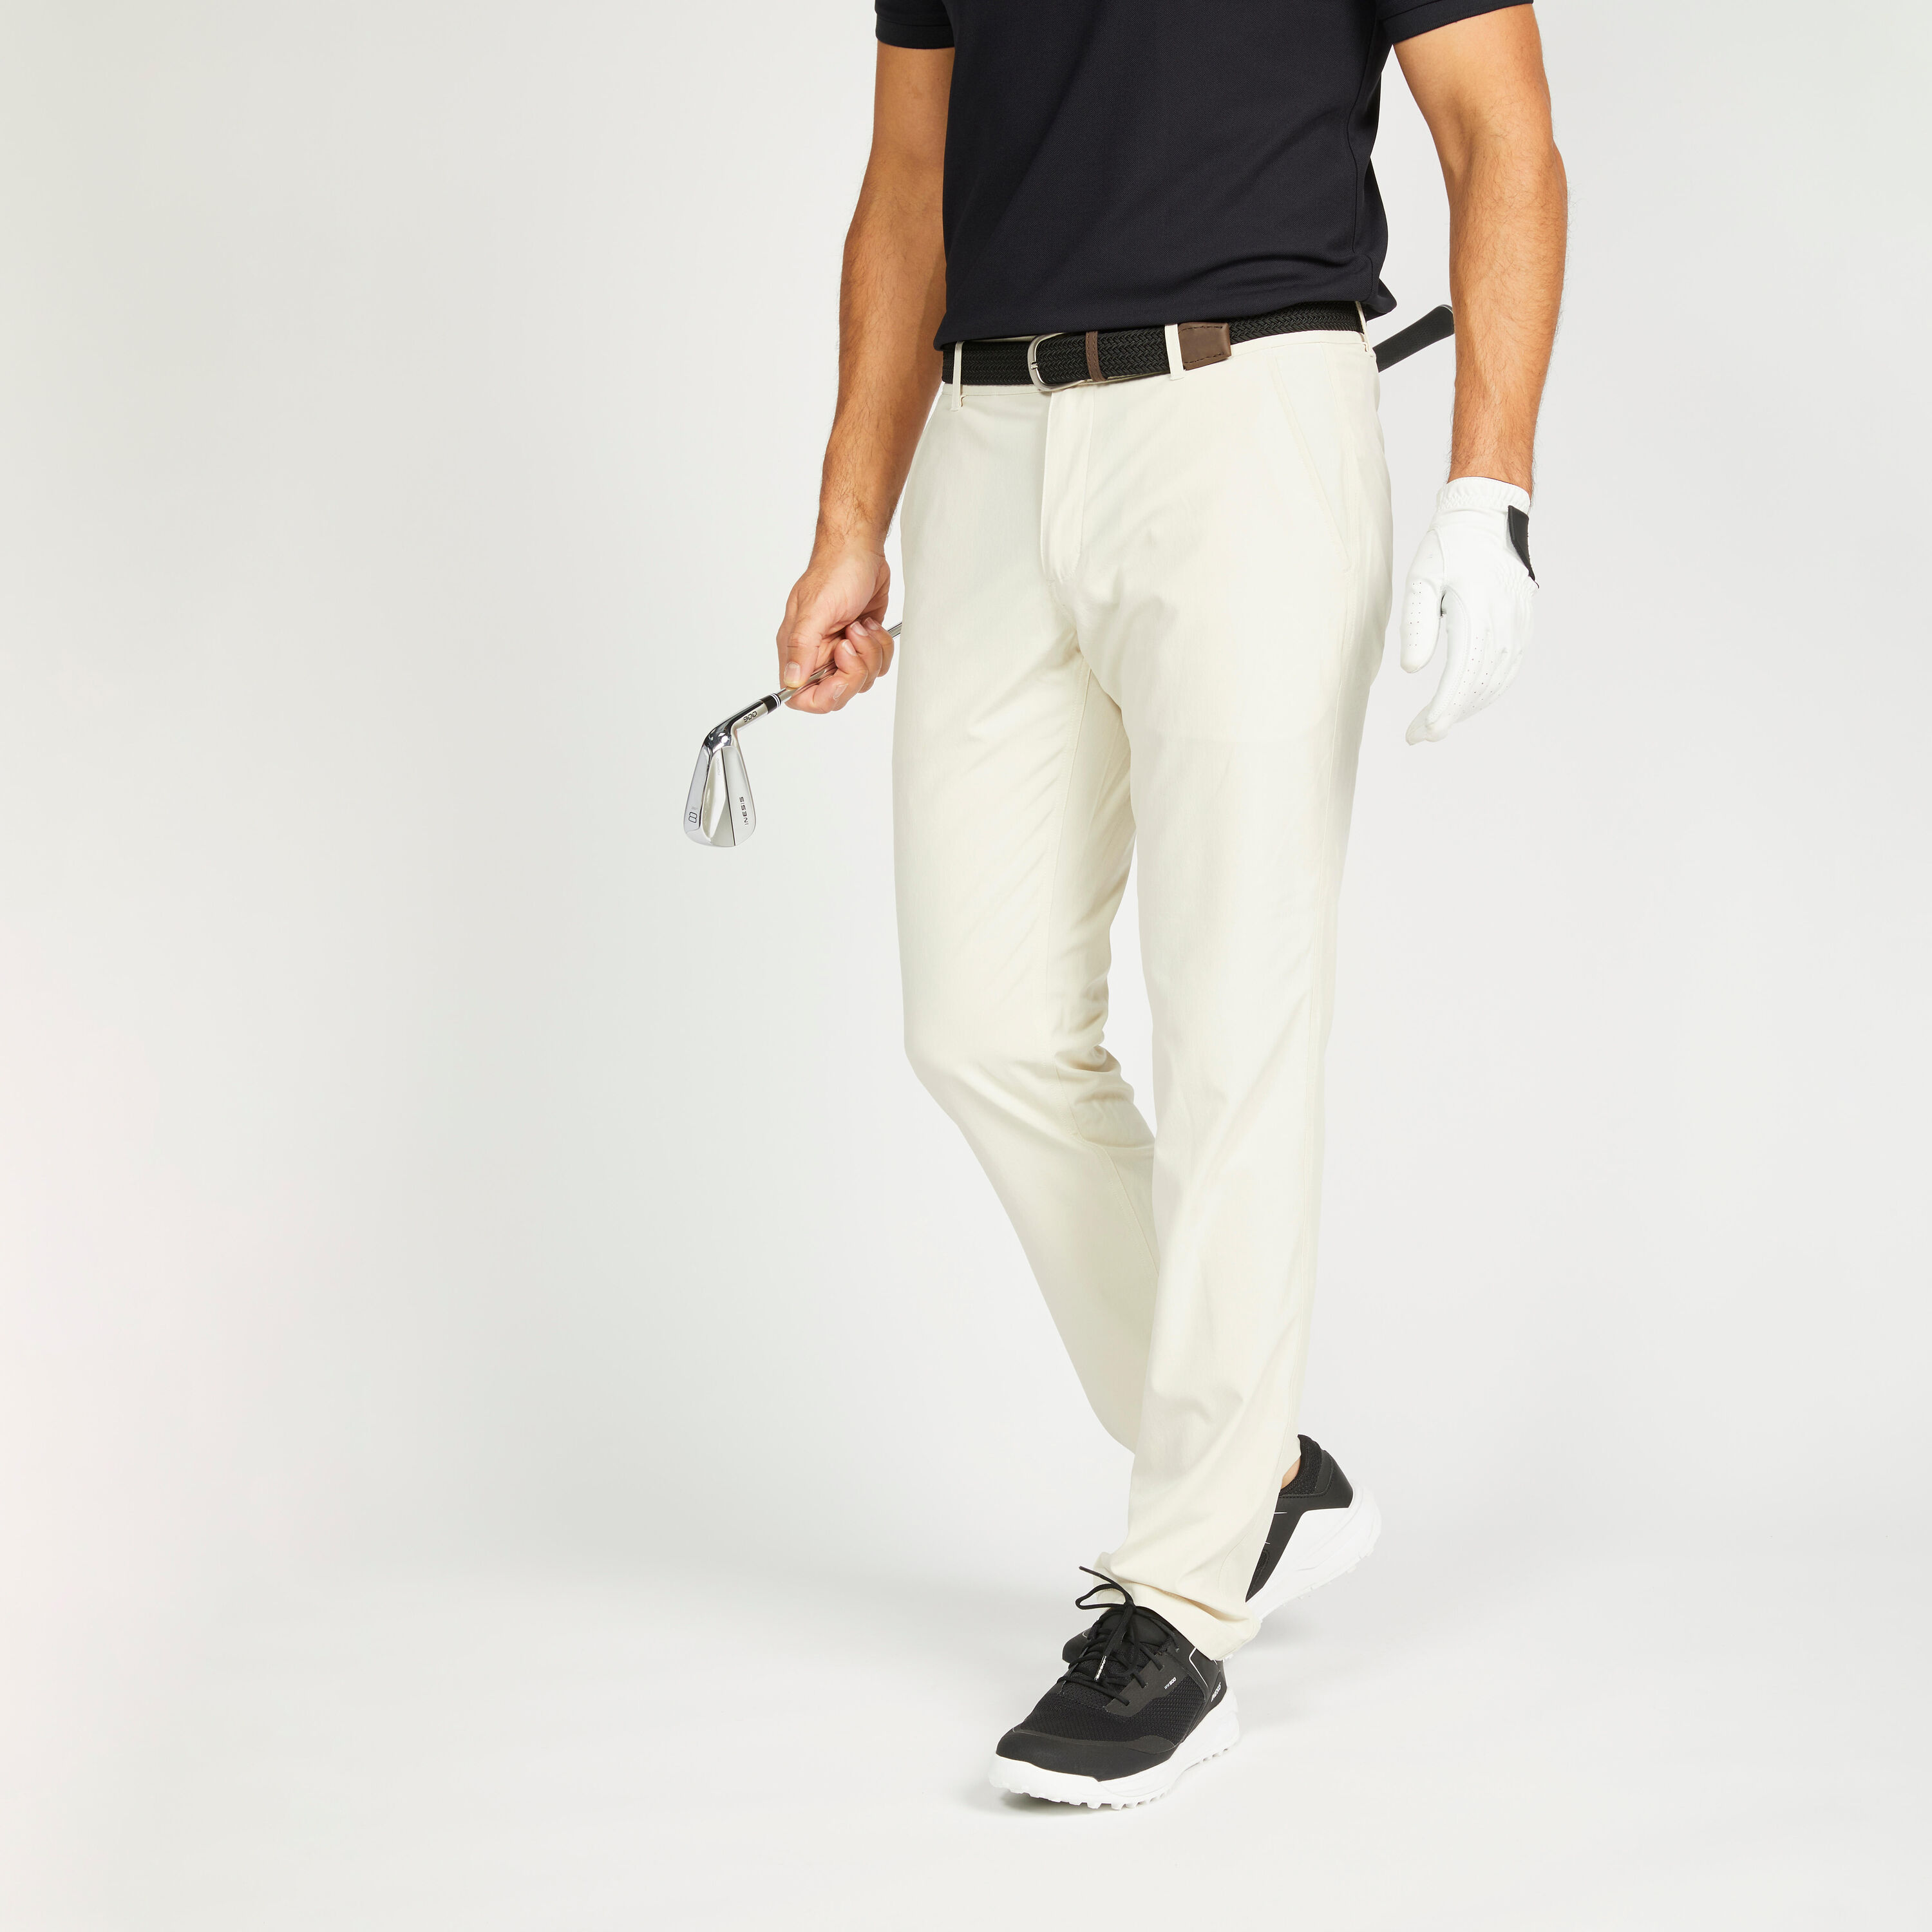 INESIS Men's golf trousers - WW 500 light beige